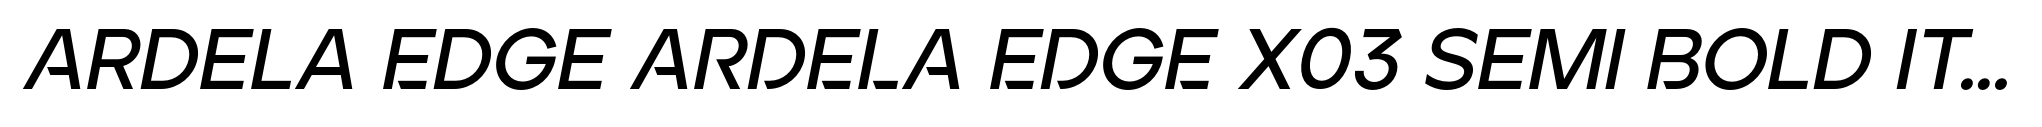 Ardela Edge ARDELA EDGE X03 Semi Bold Italic image